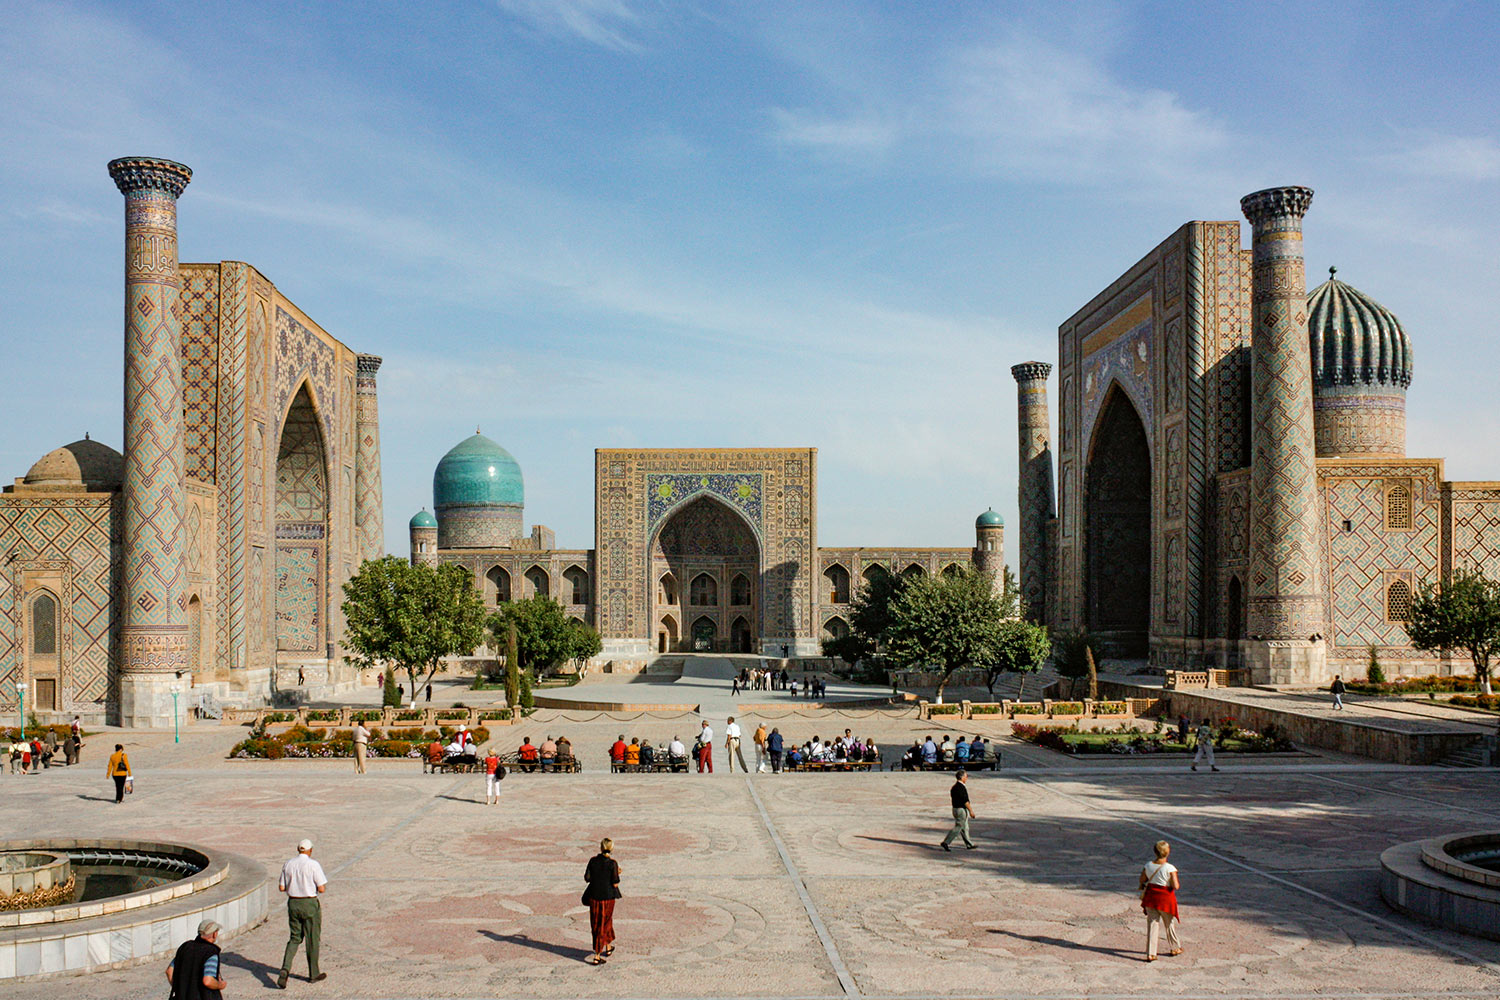 Registan, Samarkand, Uzbekistan / Registan, Samarkand, Uzbekistan